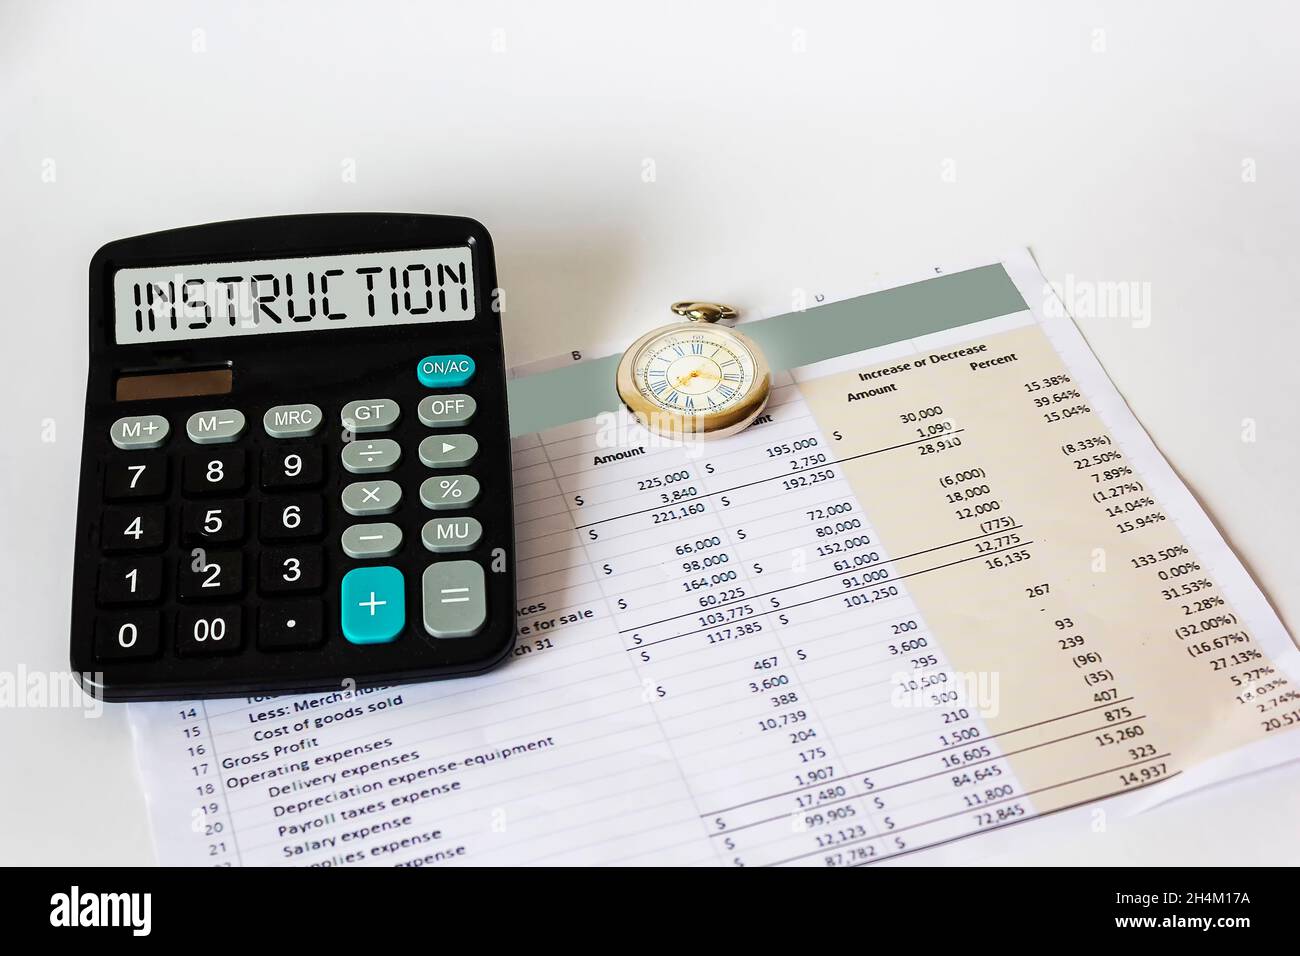 Sul display della calcolatrice la parola ISTRUZIONI. Su sfondo bianco documento finanziario e orologio Foto Stock